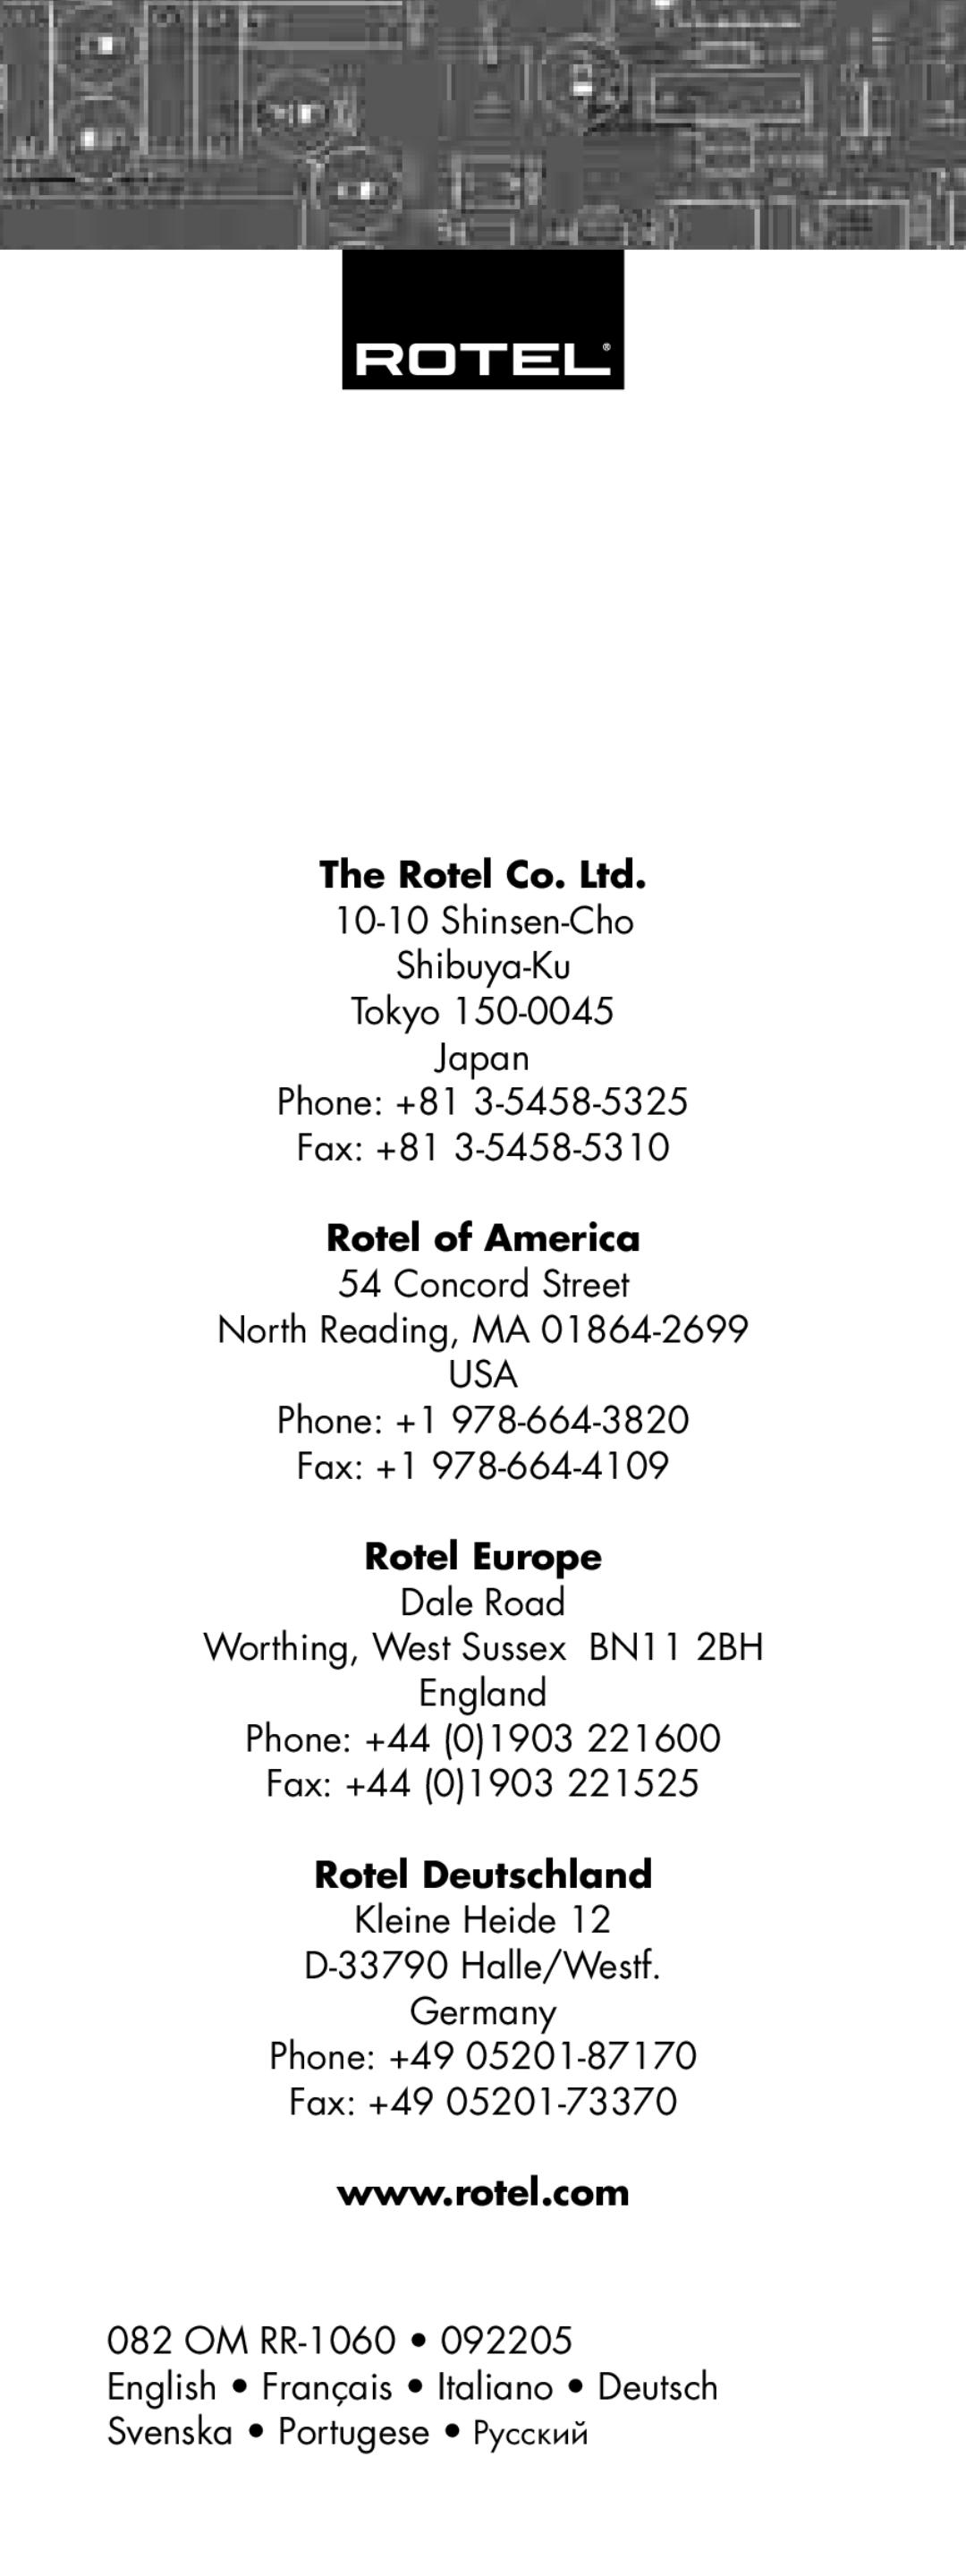 Rotel RR-1060 manual Shinsen-Cho Shibuya-Ku Tokyo Japan Phone +81 Fax +81, Rotel of America, Rotel Europe, Fax +44 01903 